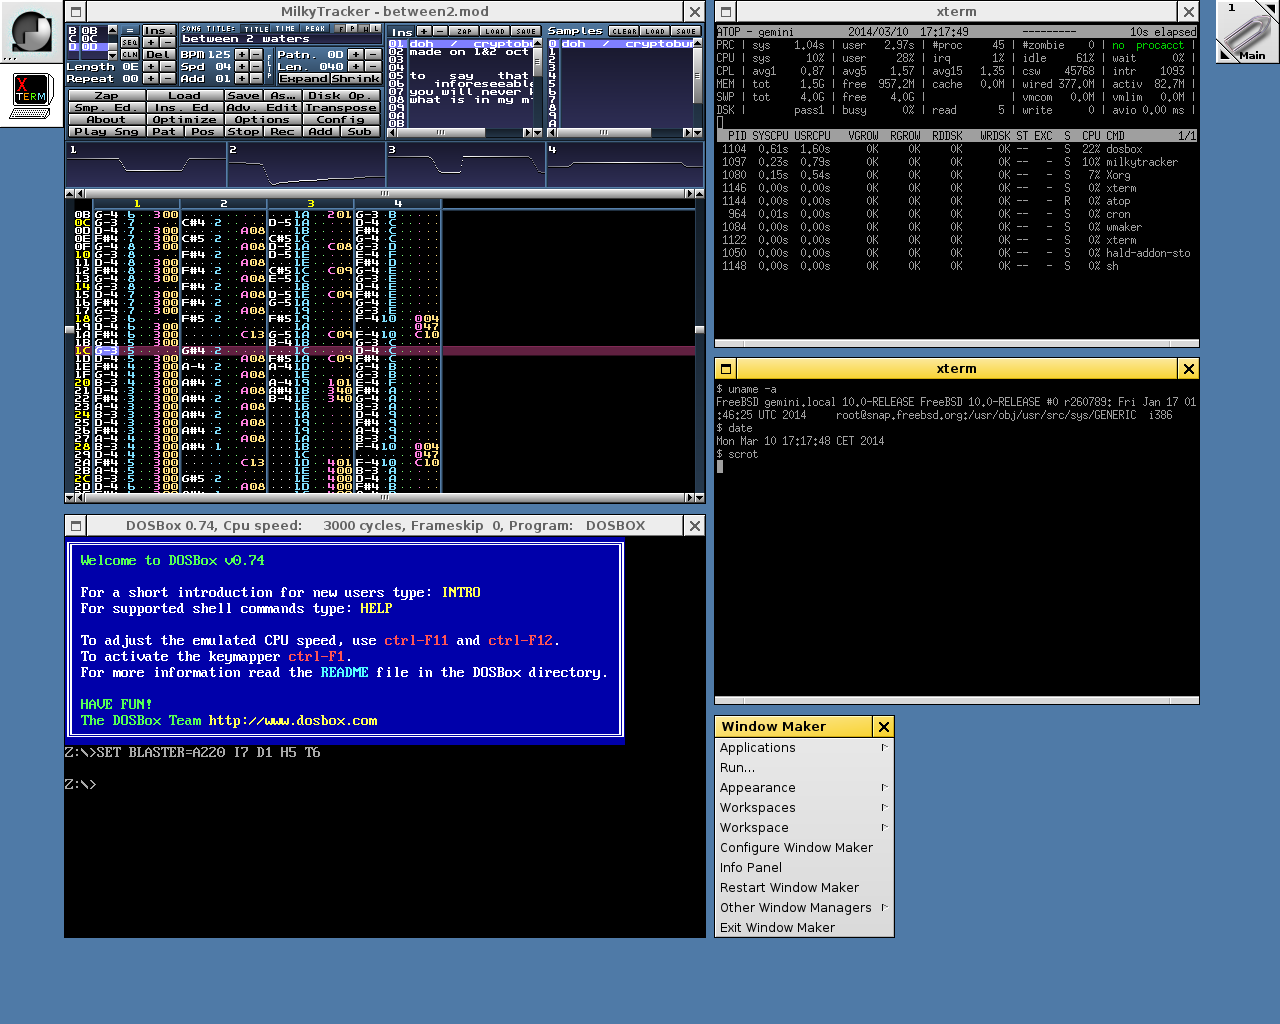 Window Maker running on FreeBSD 10.0, screenshot taken in March 2014